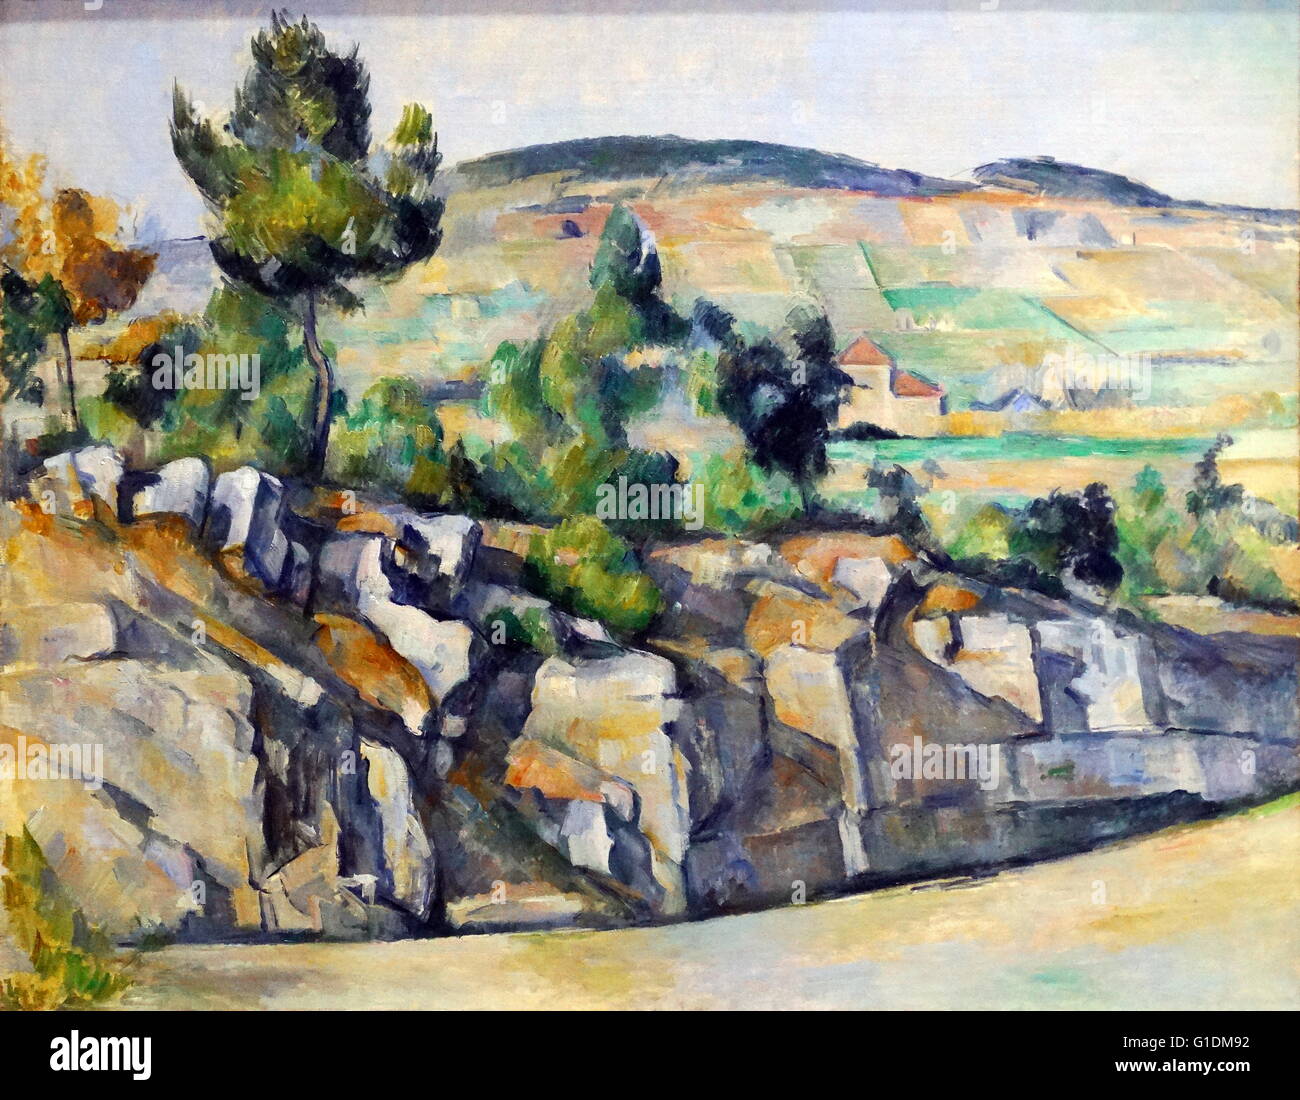 Gemälde mit dem Titel "Hang in Provenca" von Paul Cézanne, (1839-1906), ein französischer Künstler und post-impressionistischen Maler. Vom 19. Jahrhundert Stockfoto